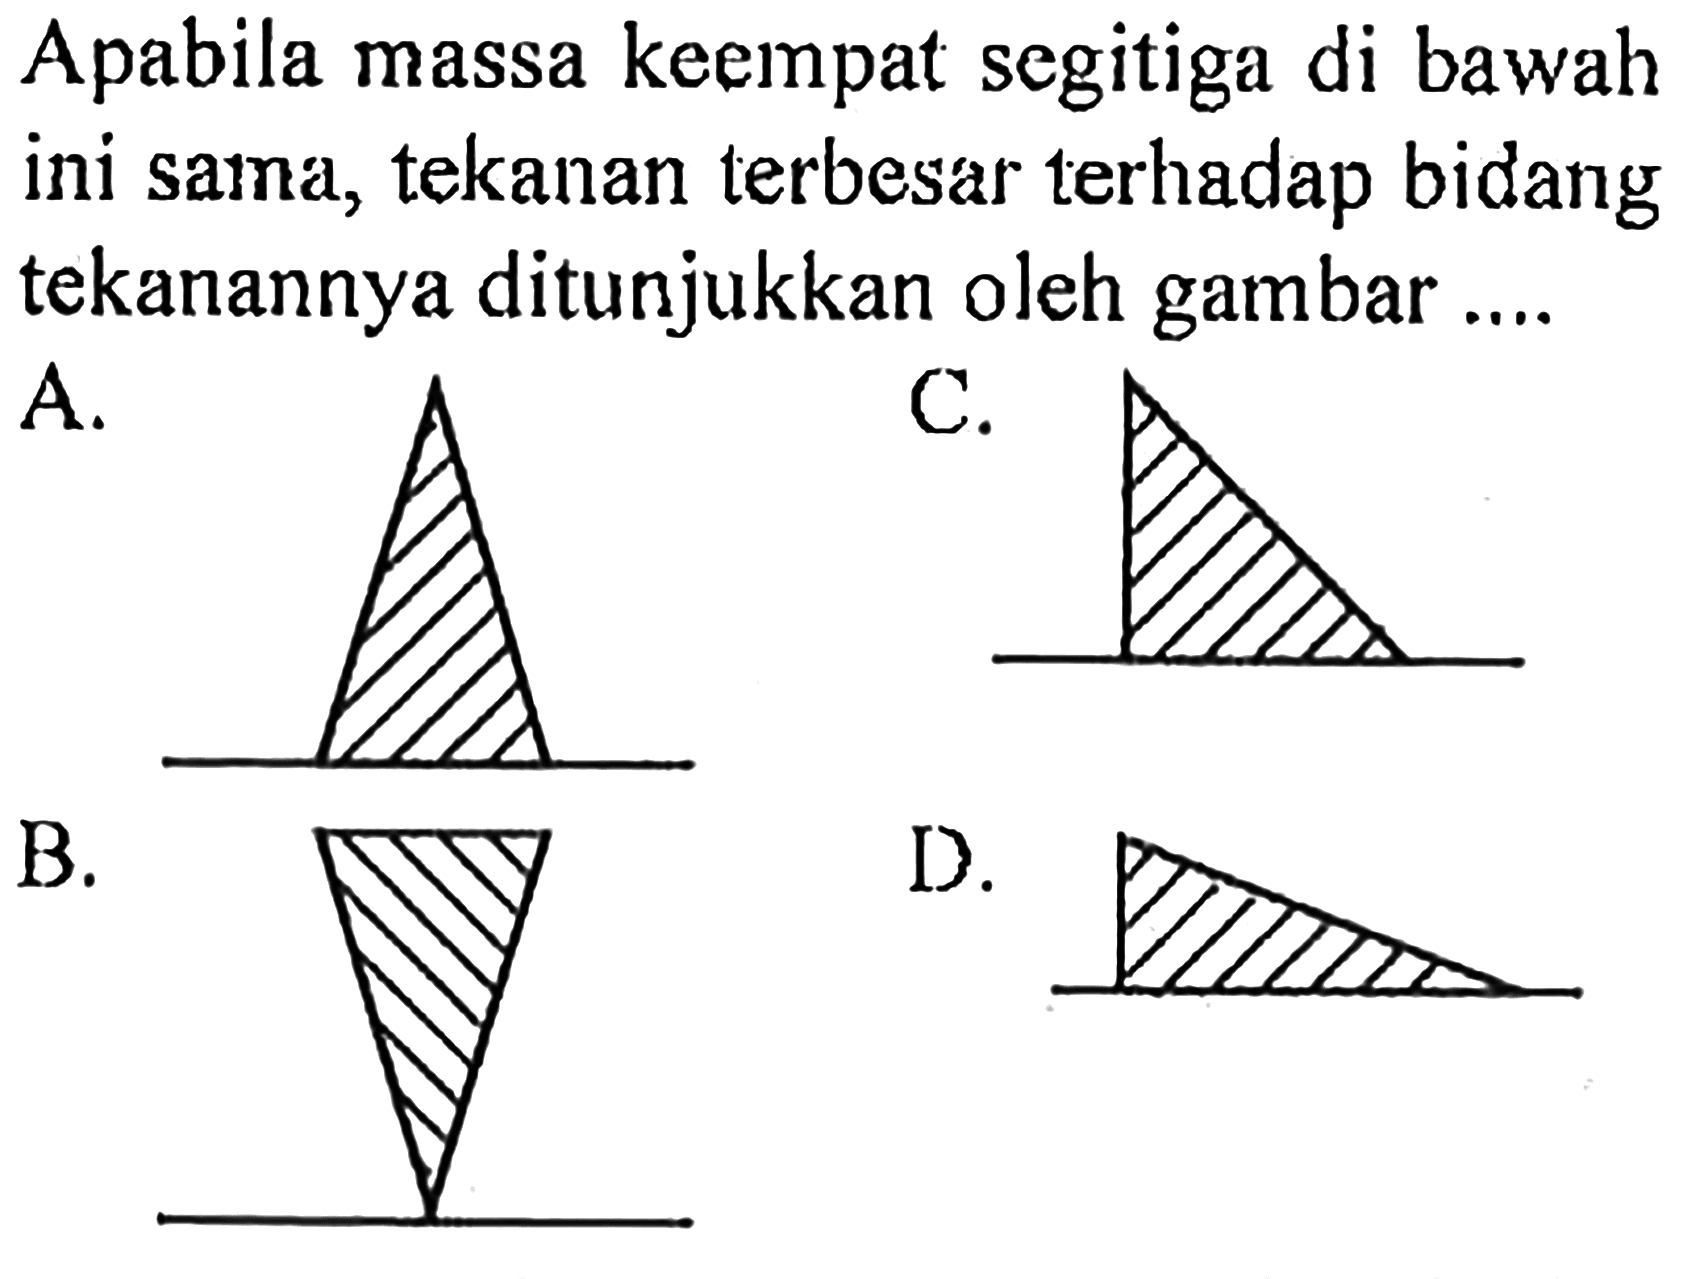 Apabila massa keempat segitiga di bawah ini sama, tekanan terbesar terhadap bidang tekanannya ditunjukkan oleh gambar....A.
B.
C.
D.